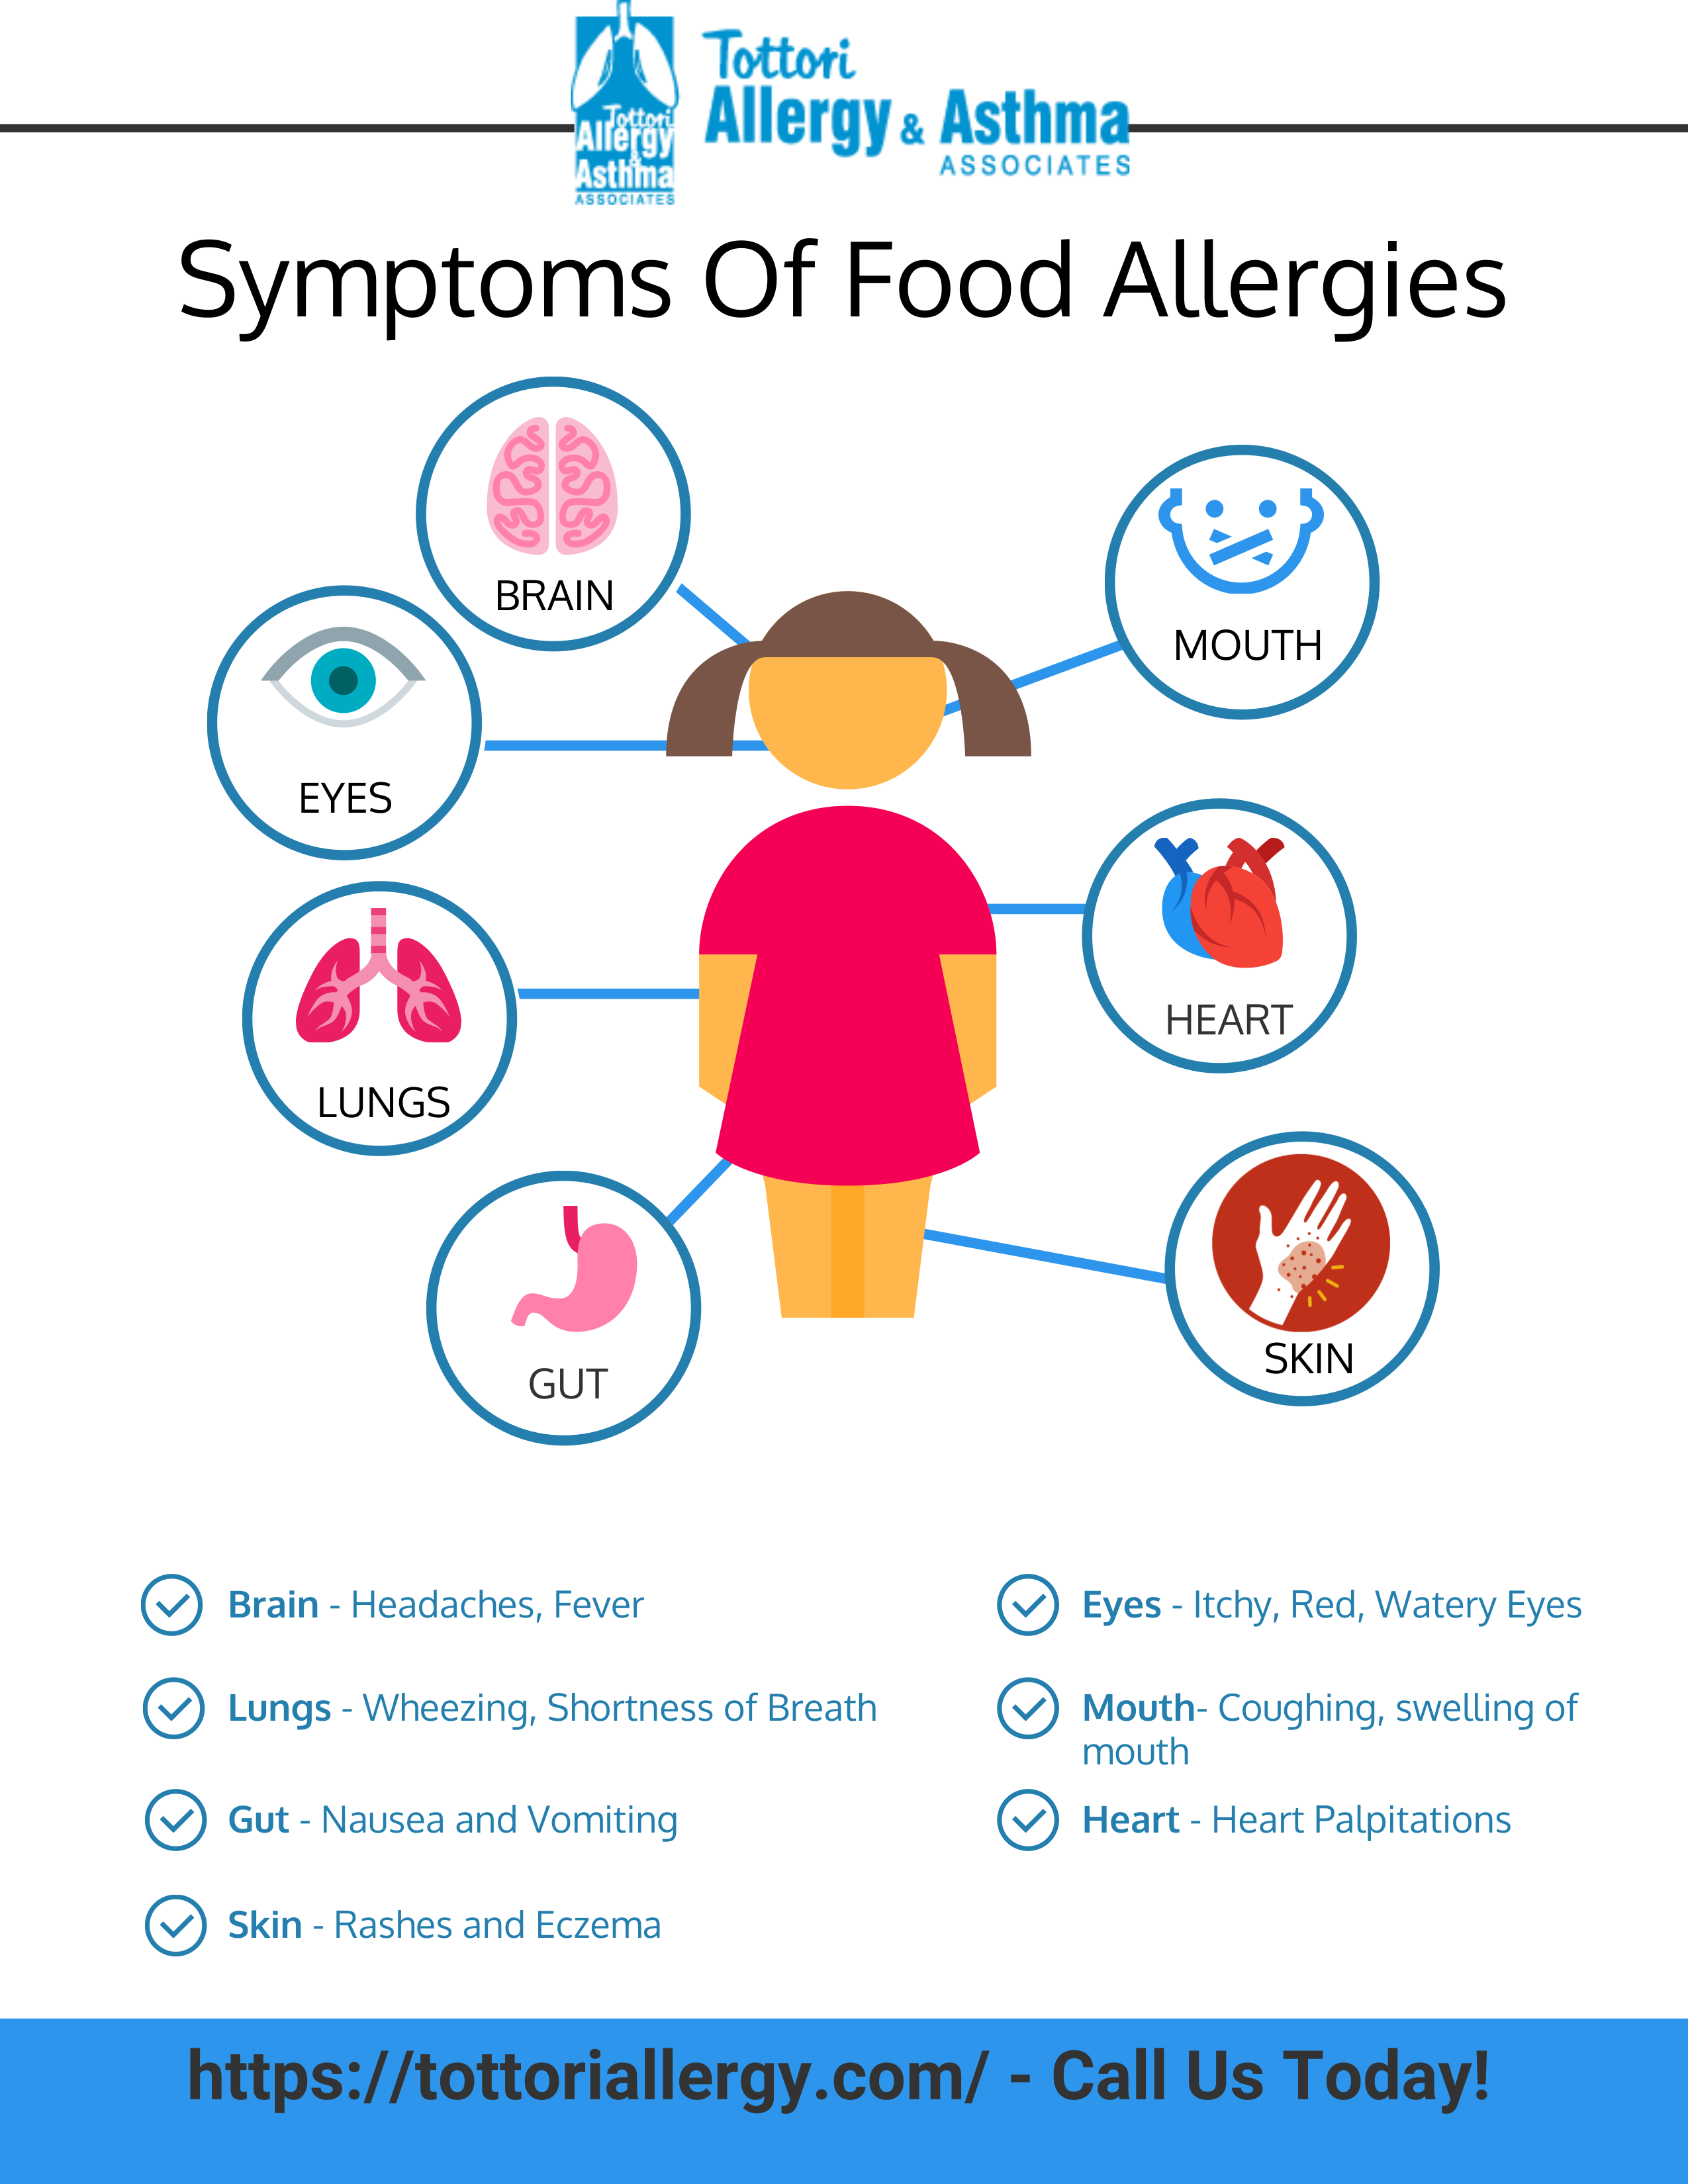 Symptoms of Food Allergies